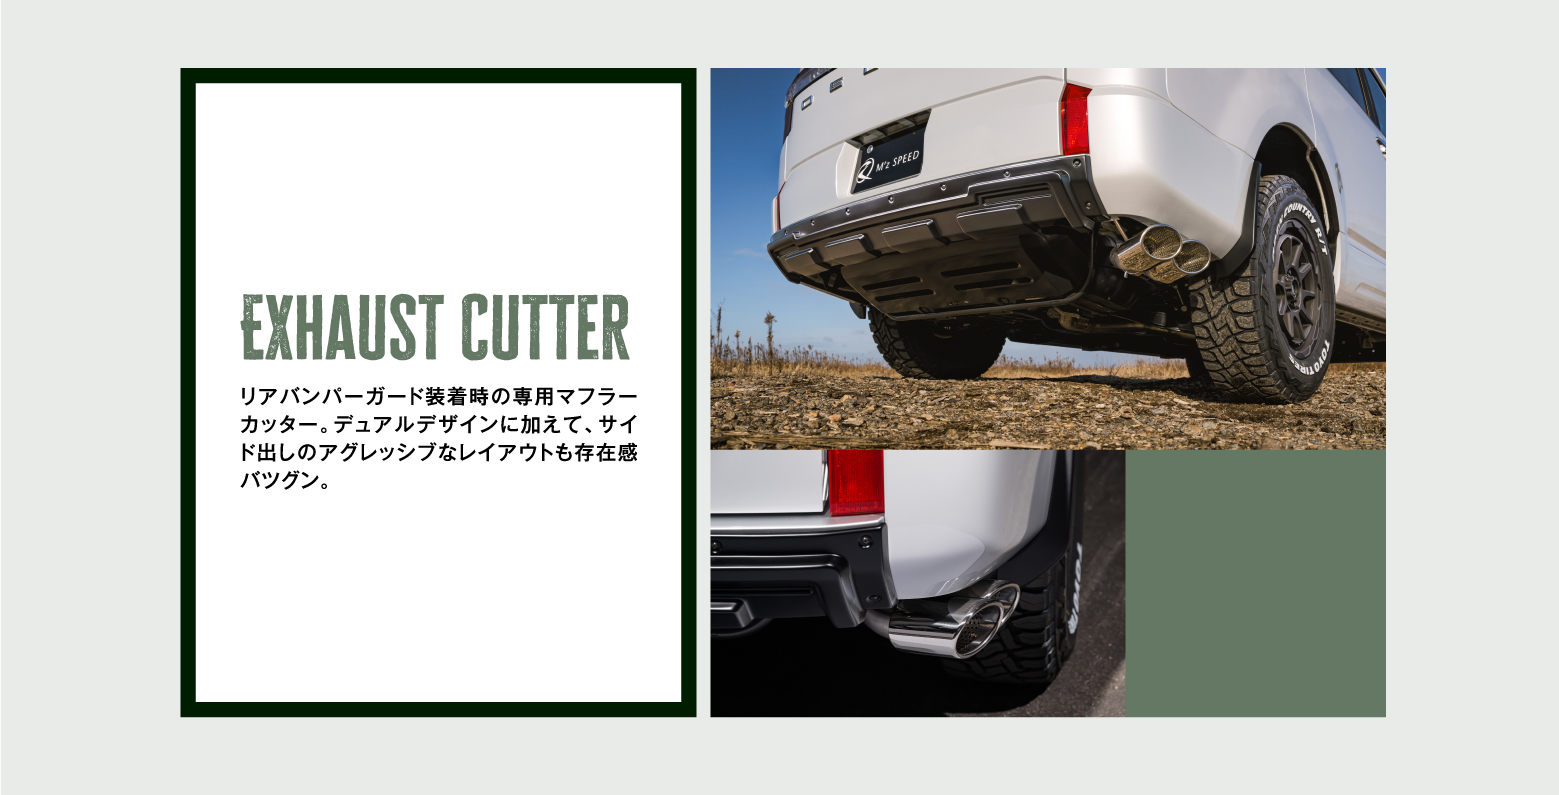 Exhaust Cutter リアバンパーガード装着時の専用マフラーカッター。デュアルデザインに加えて、サイド出しのアグレッシブなレイアウトも存在感バツグン。